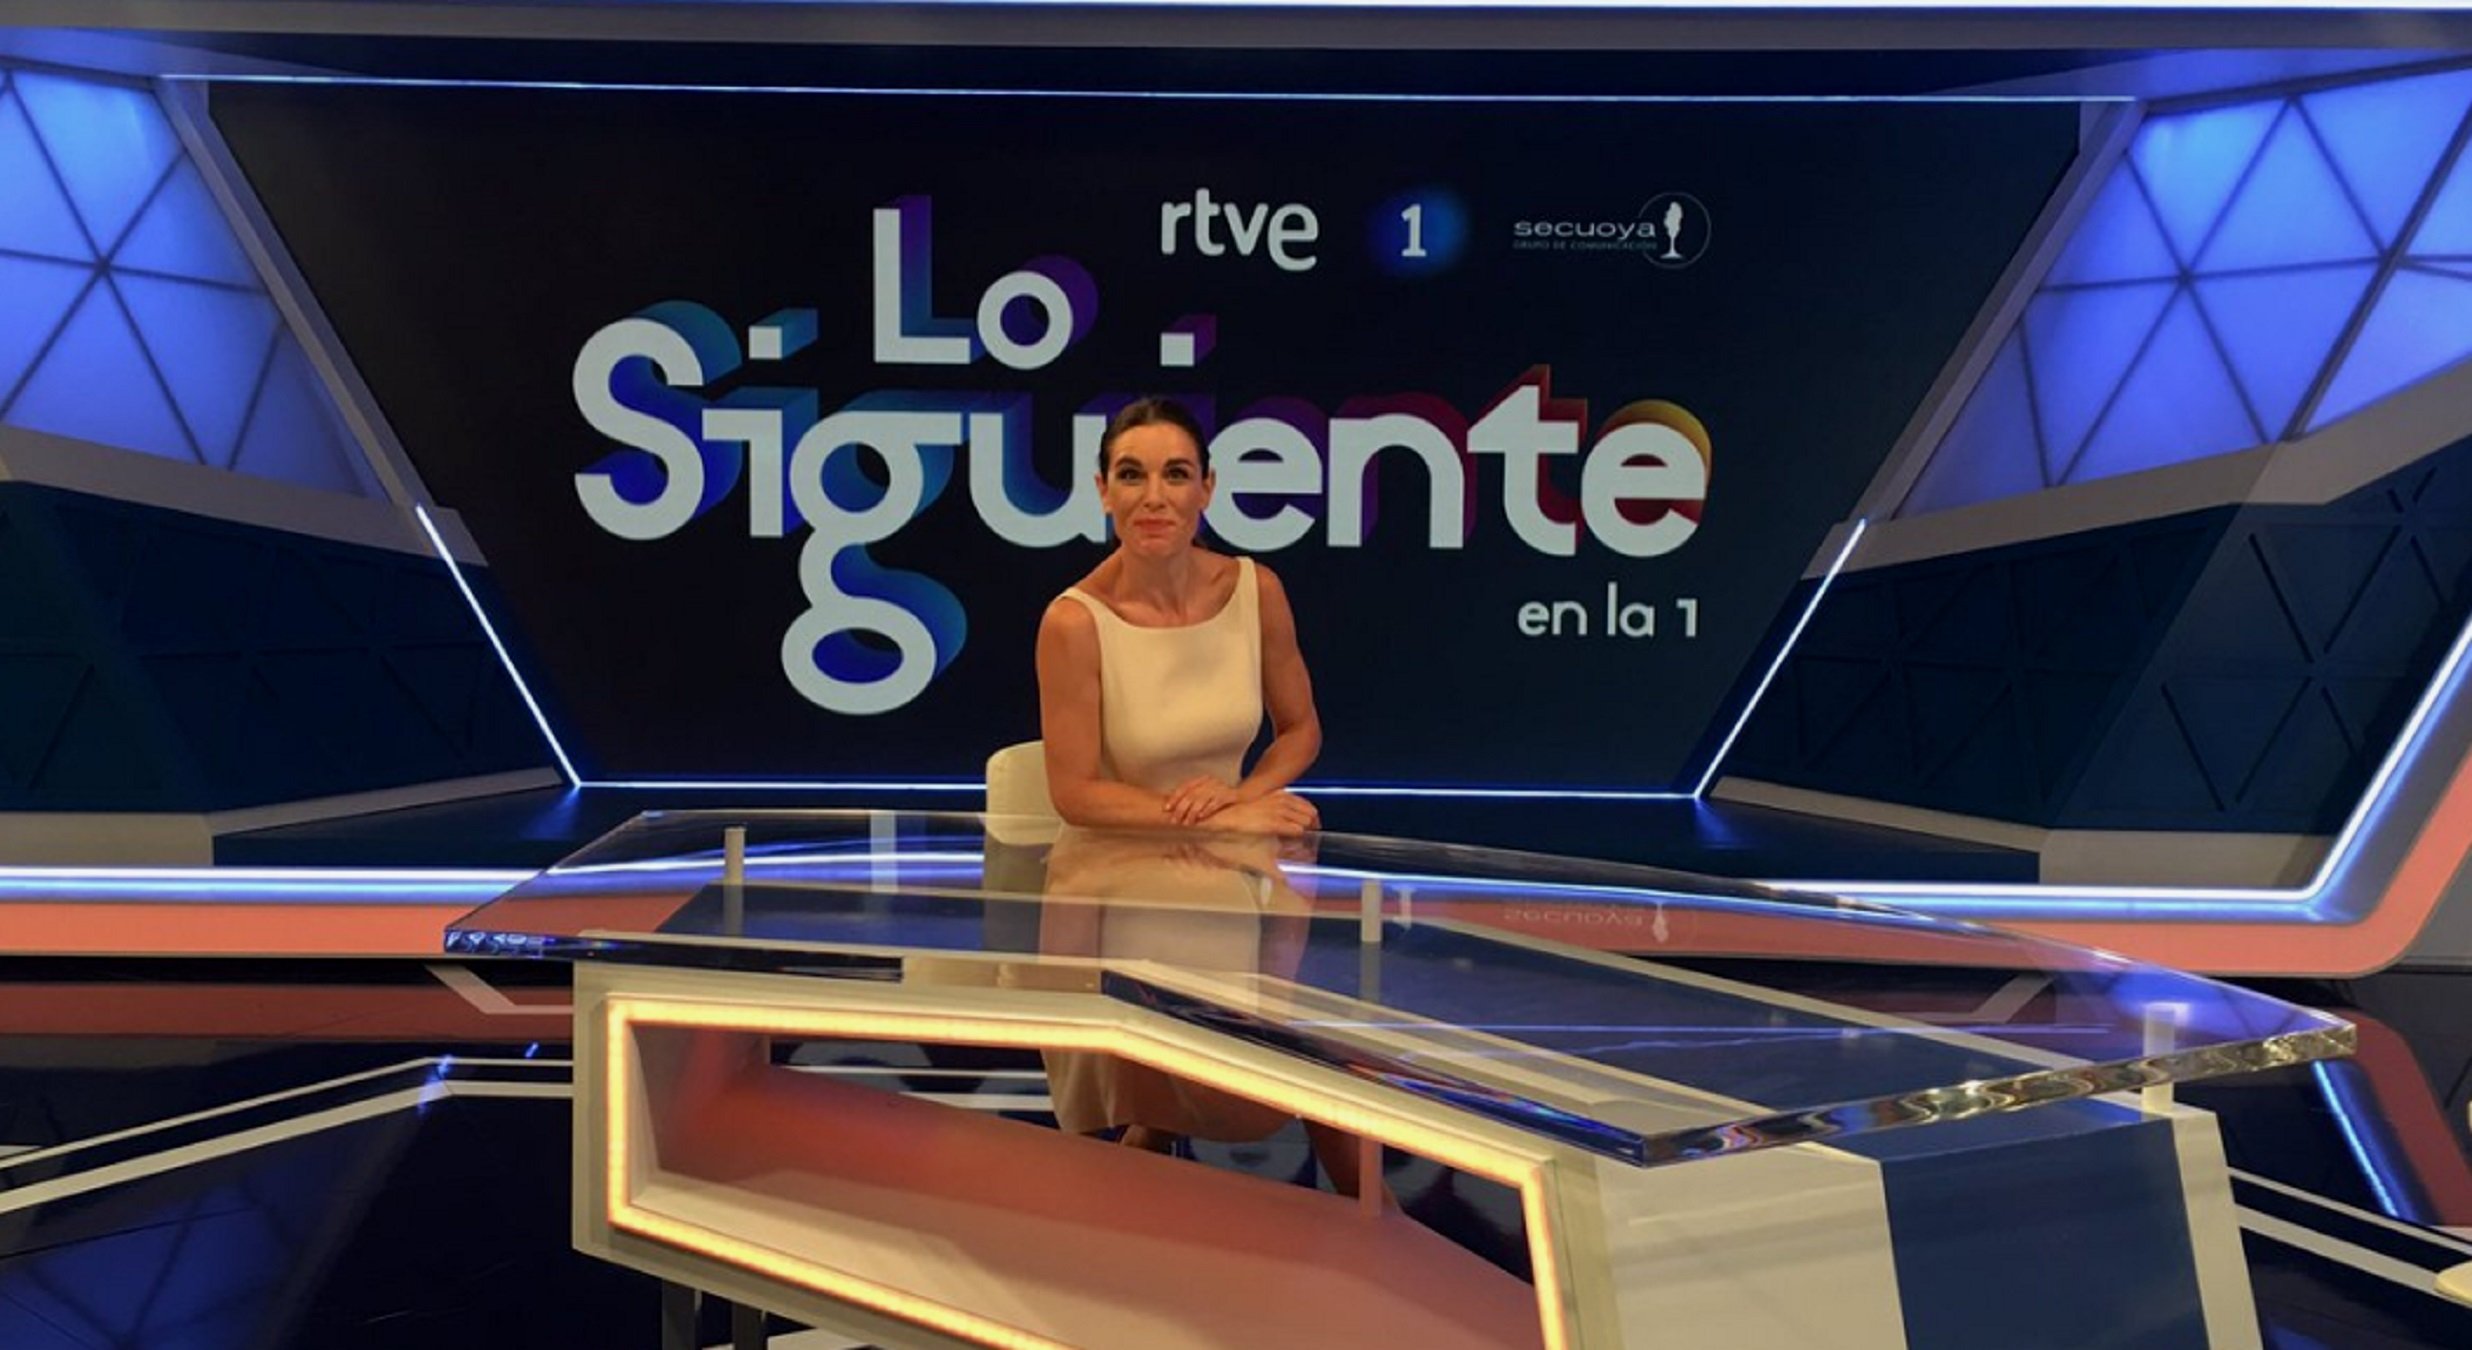 TVE promociona el programa que sustituye el de Cárdenas: "Este será mejor"